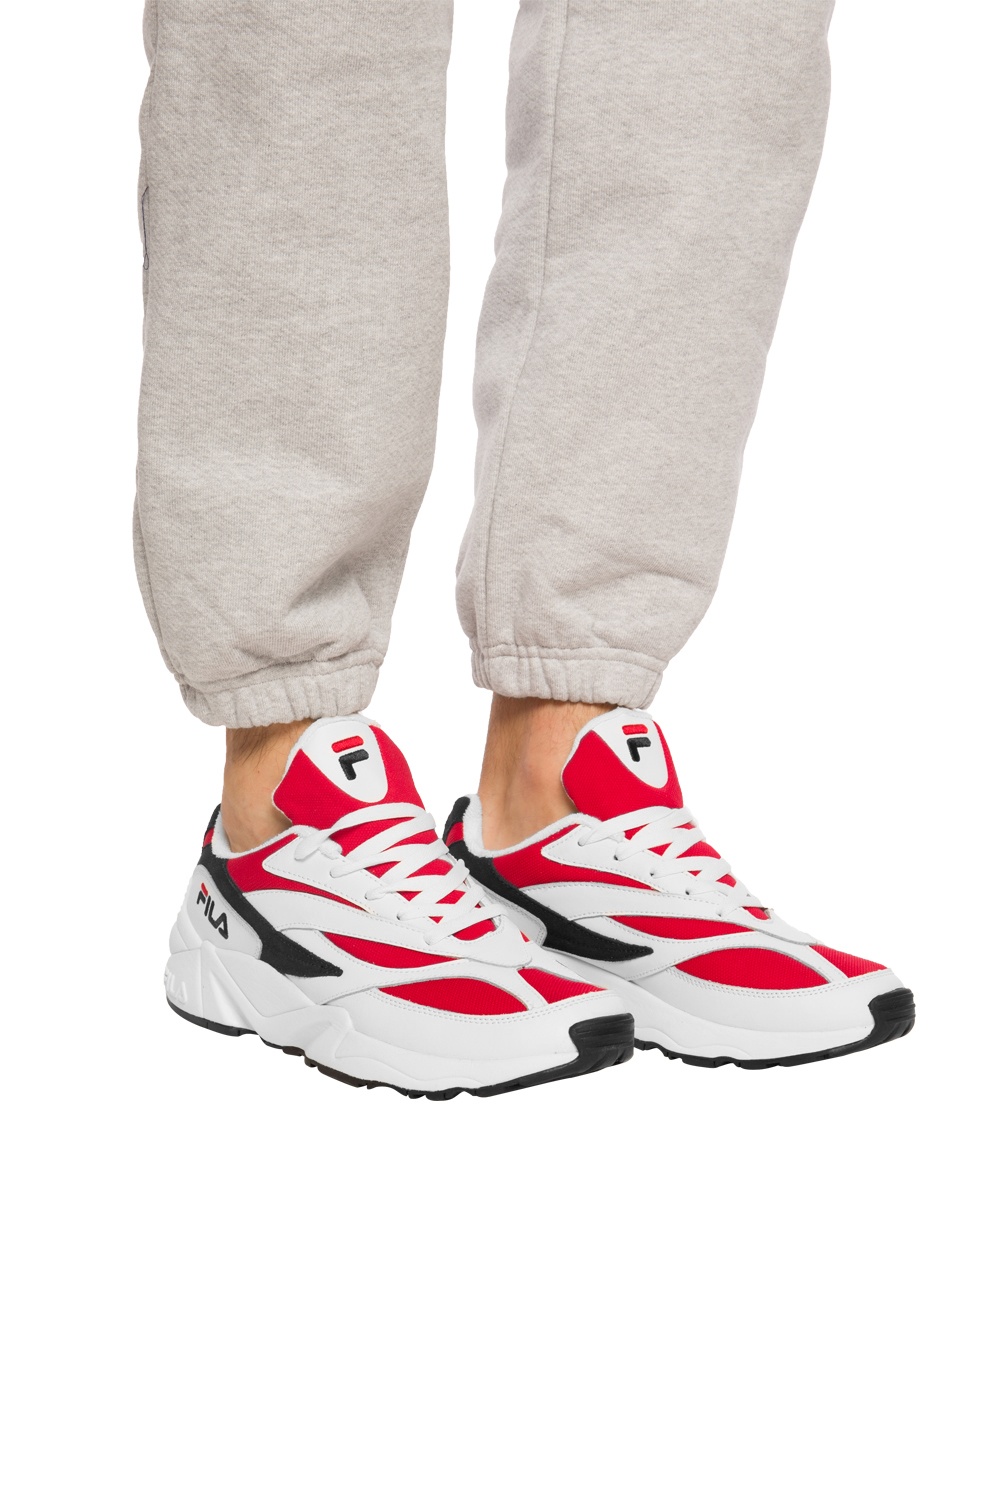 Fila '94 Low’ sneakers